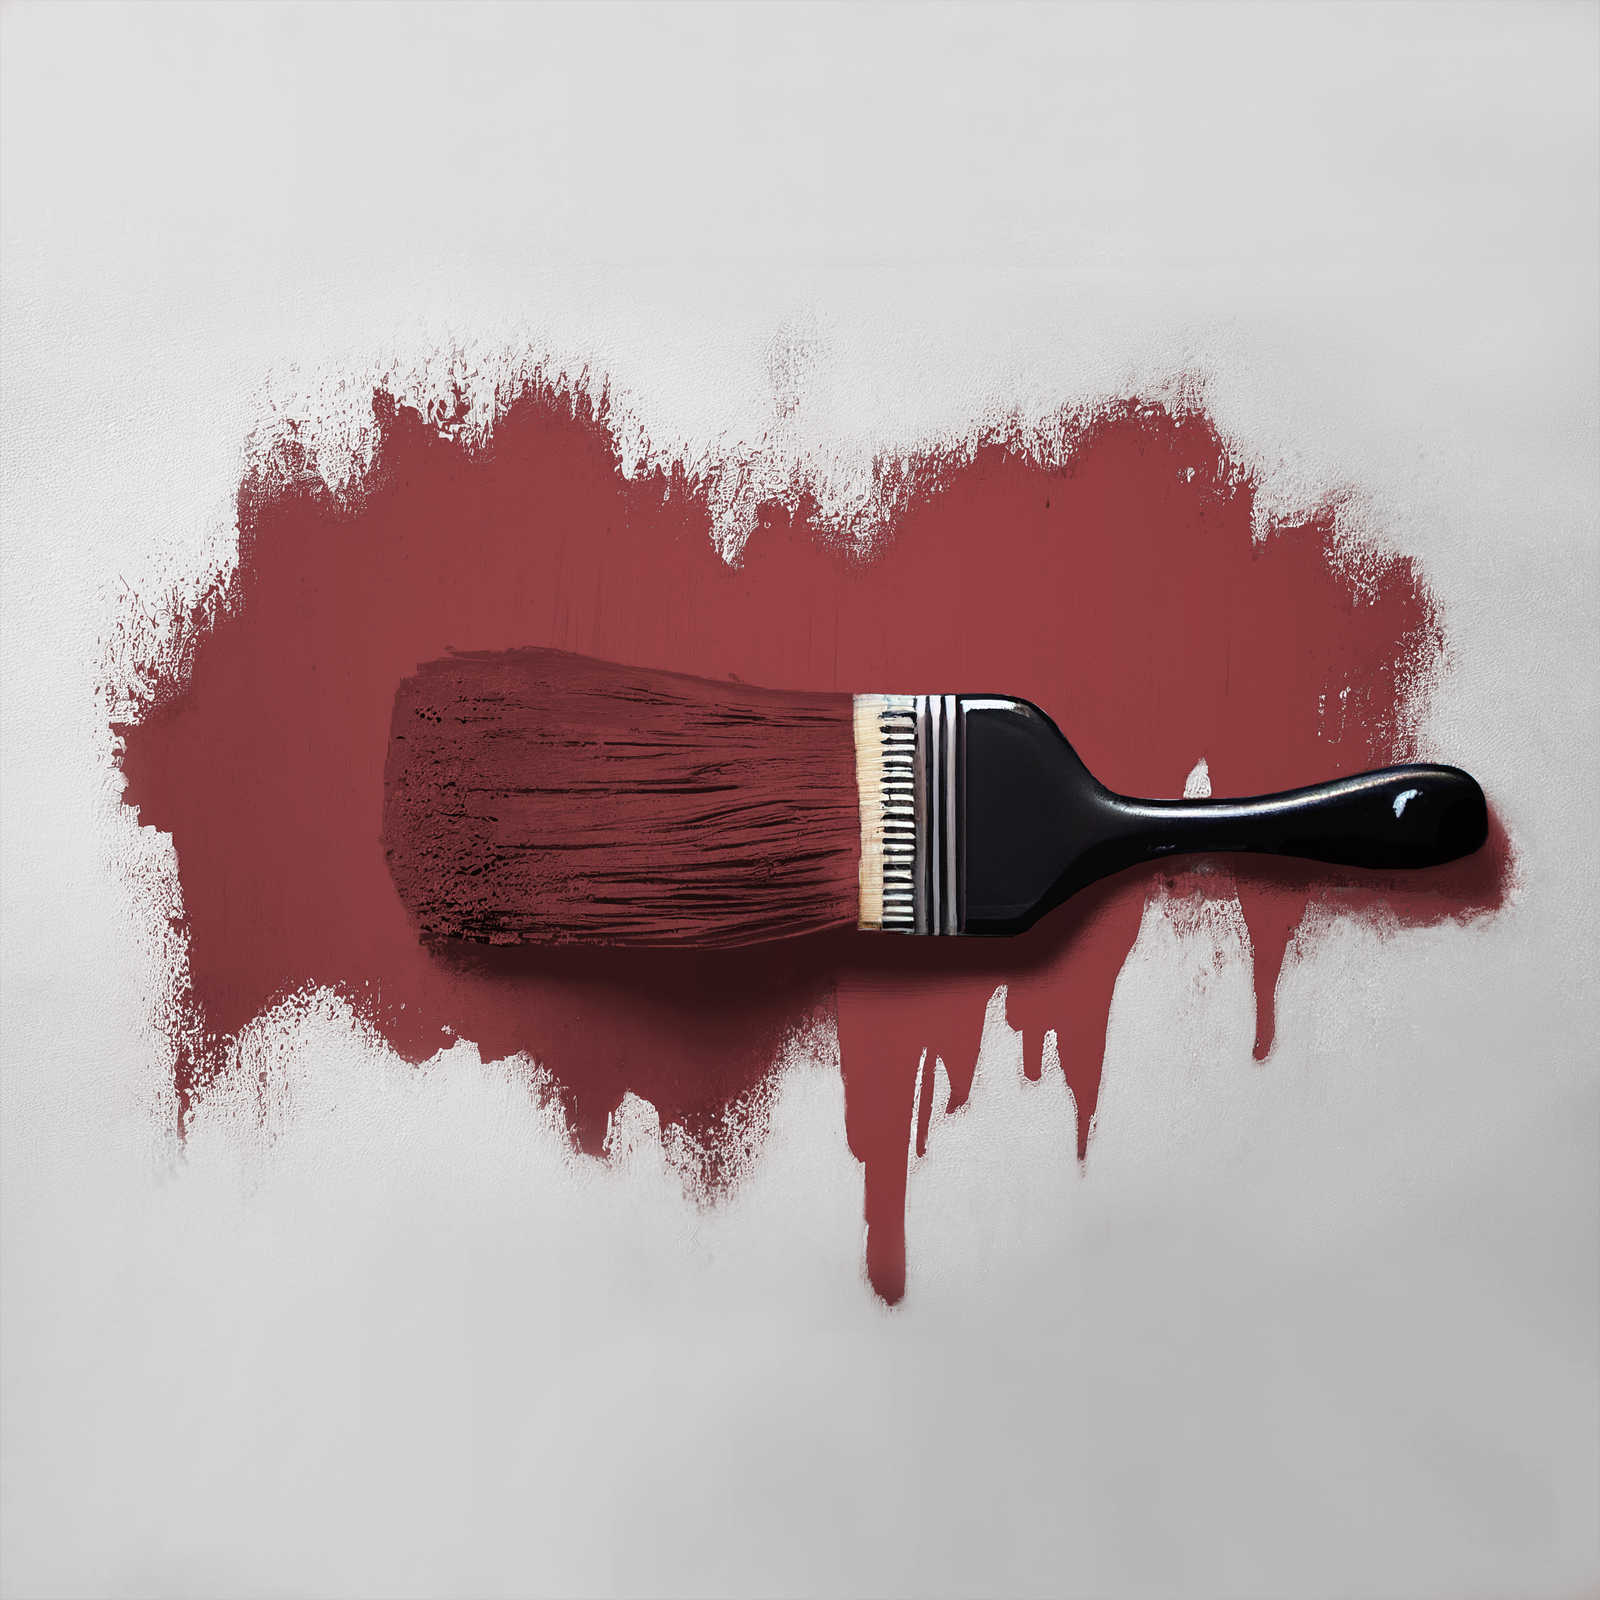             Pittura murale TCK7006 »Perky Pomegranate« in rosso scuro appassionato – 5,0 litri
        